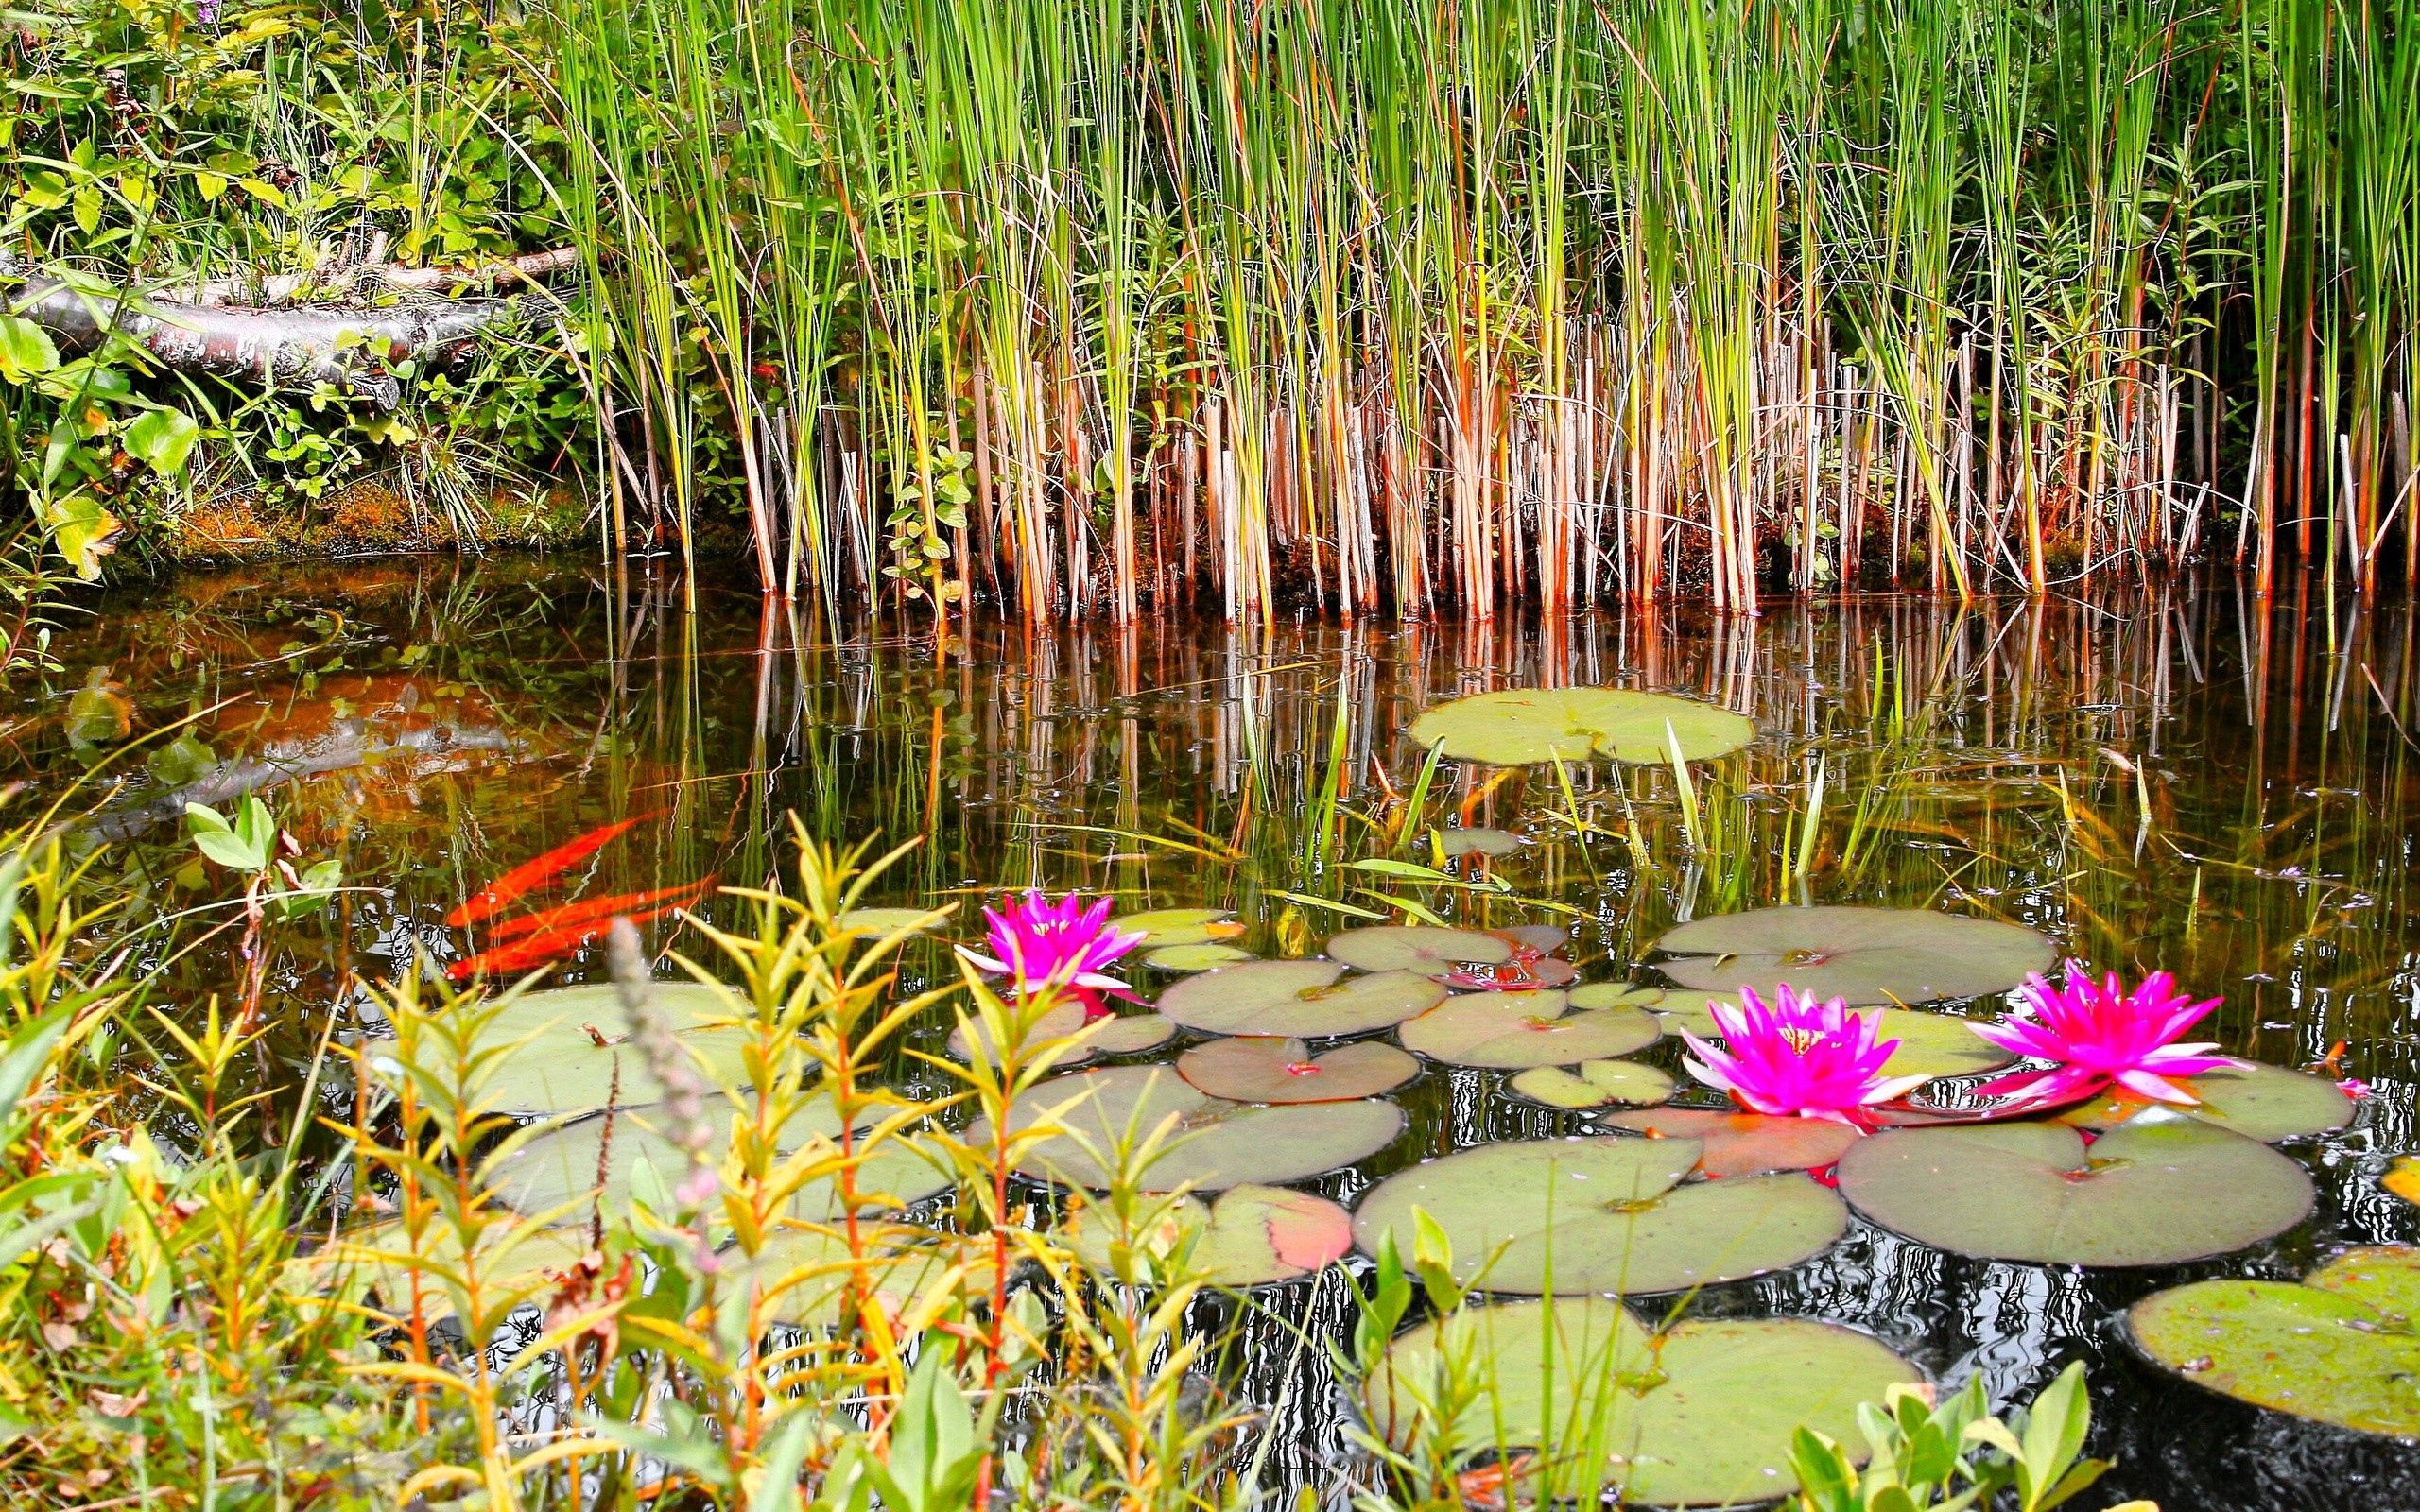 grass, nature, summer, swamp, water lilies